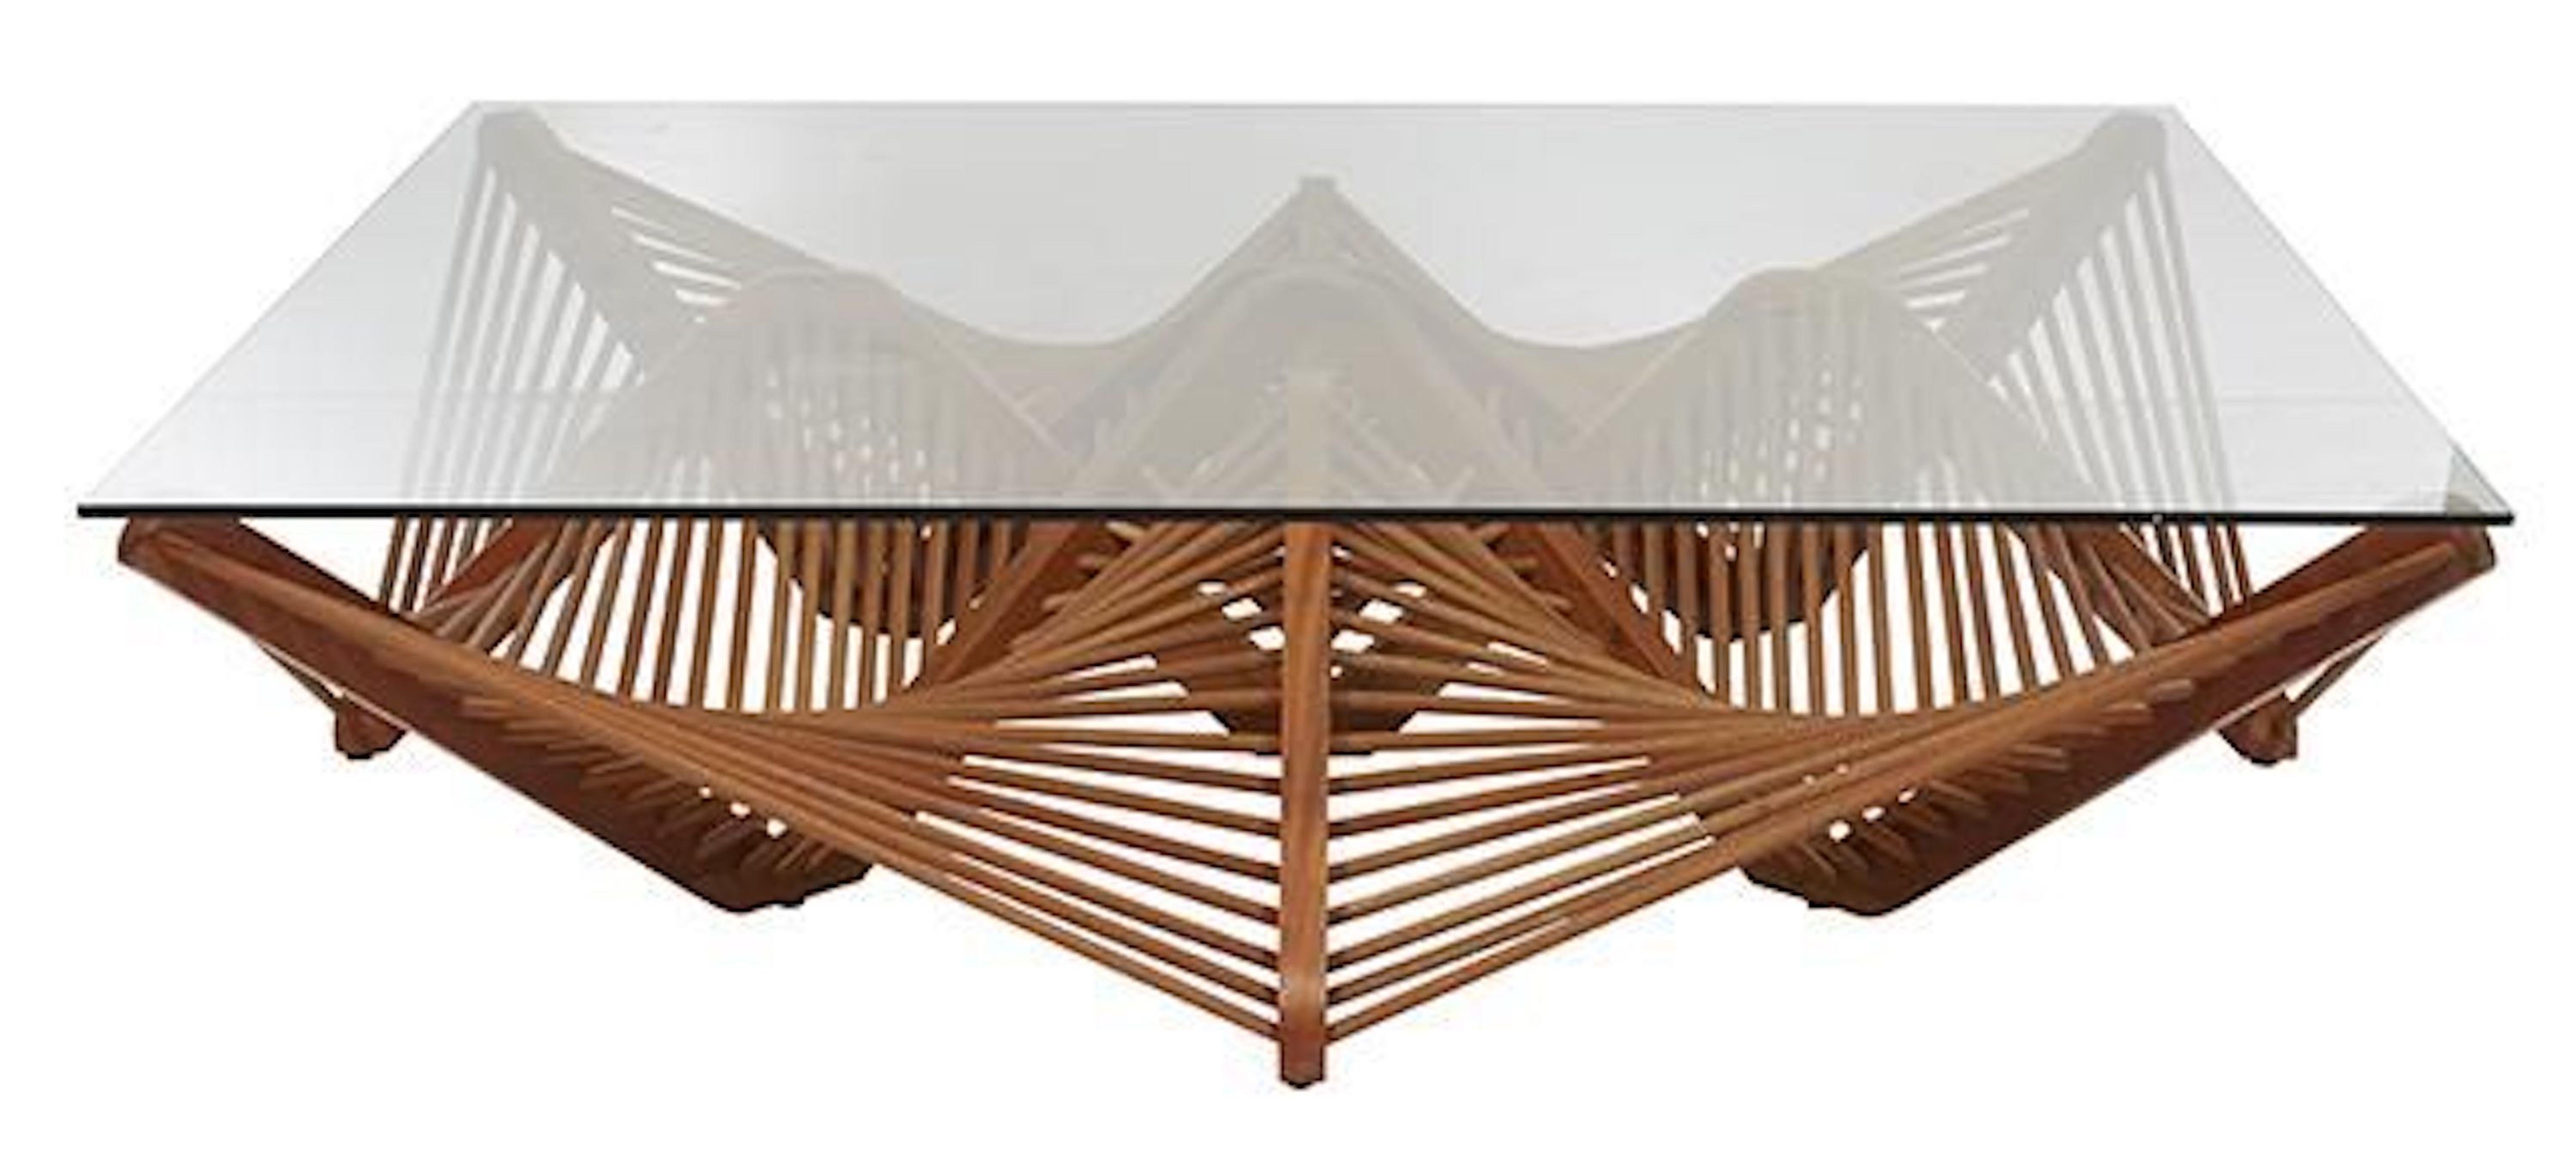 Dieses innovative Design, das von Vito Selma entworfen wurde, zeigt eine faszinierende Anordnung geometrischer Formen, die aus Lauanholz gefertigt sind. Das kühne Geflecht aus miteinander verbundenen Formen verleiht dem Gesamtdesign eine gewisse